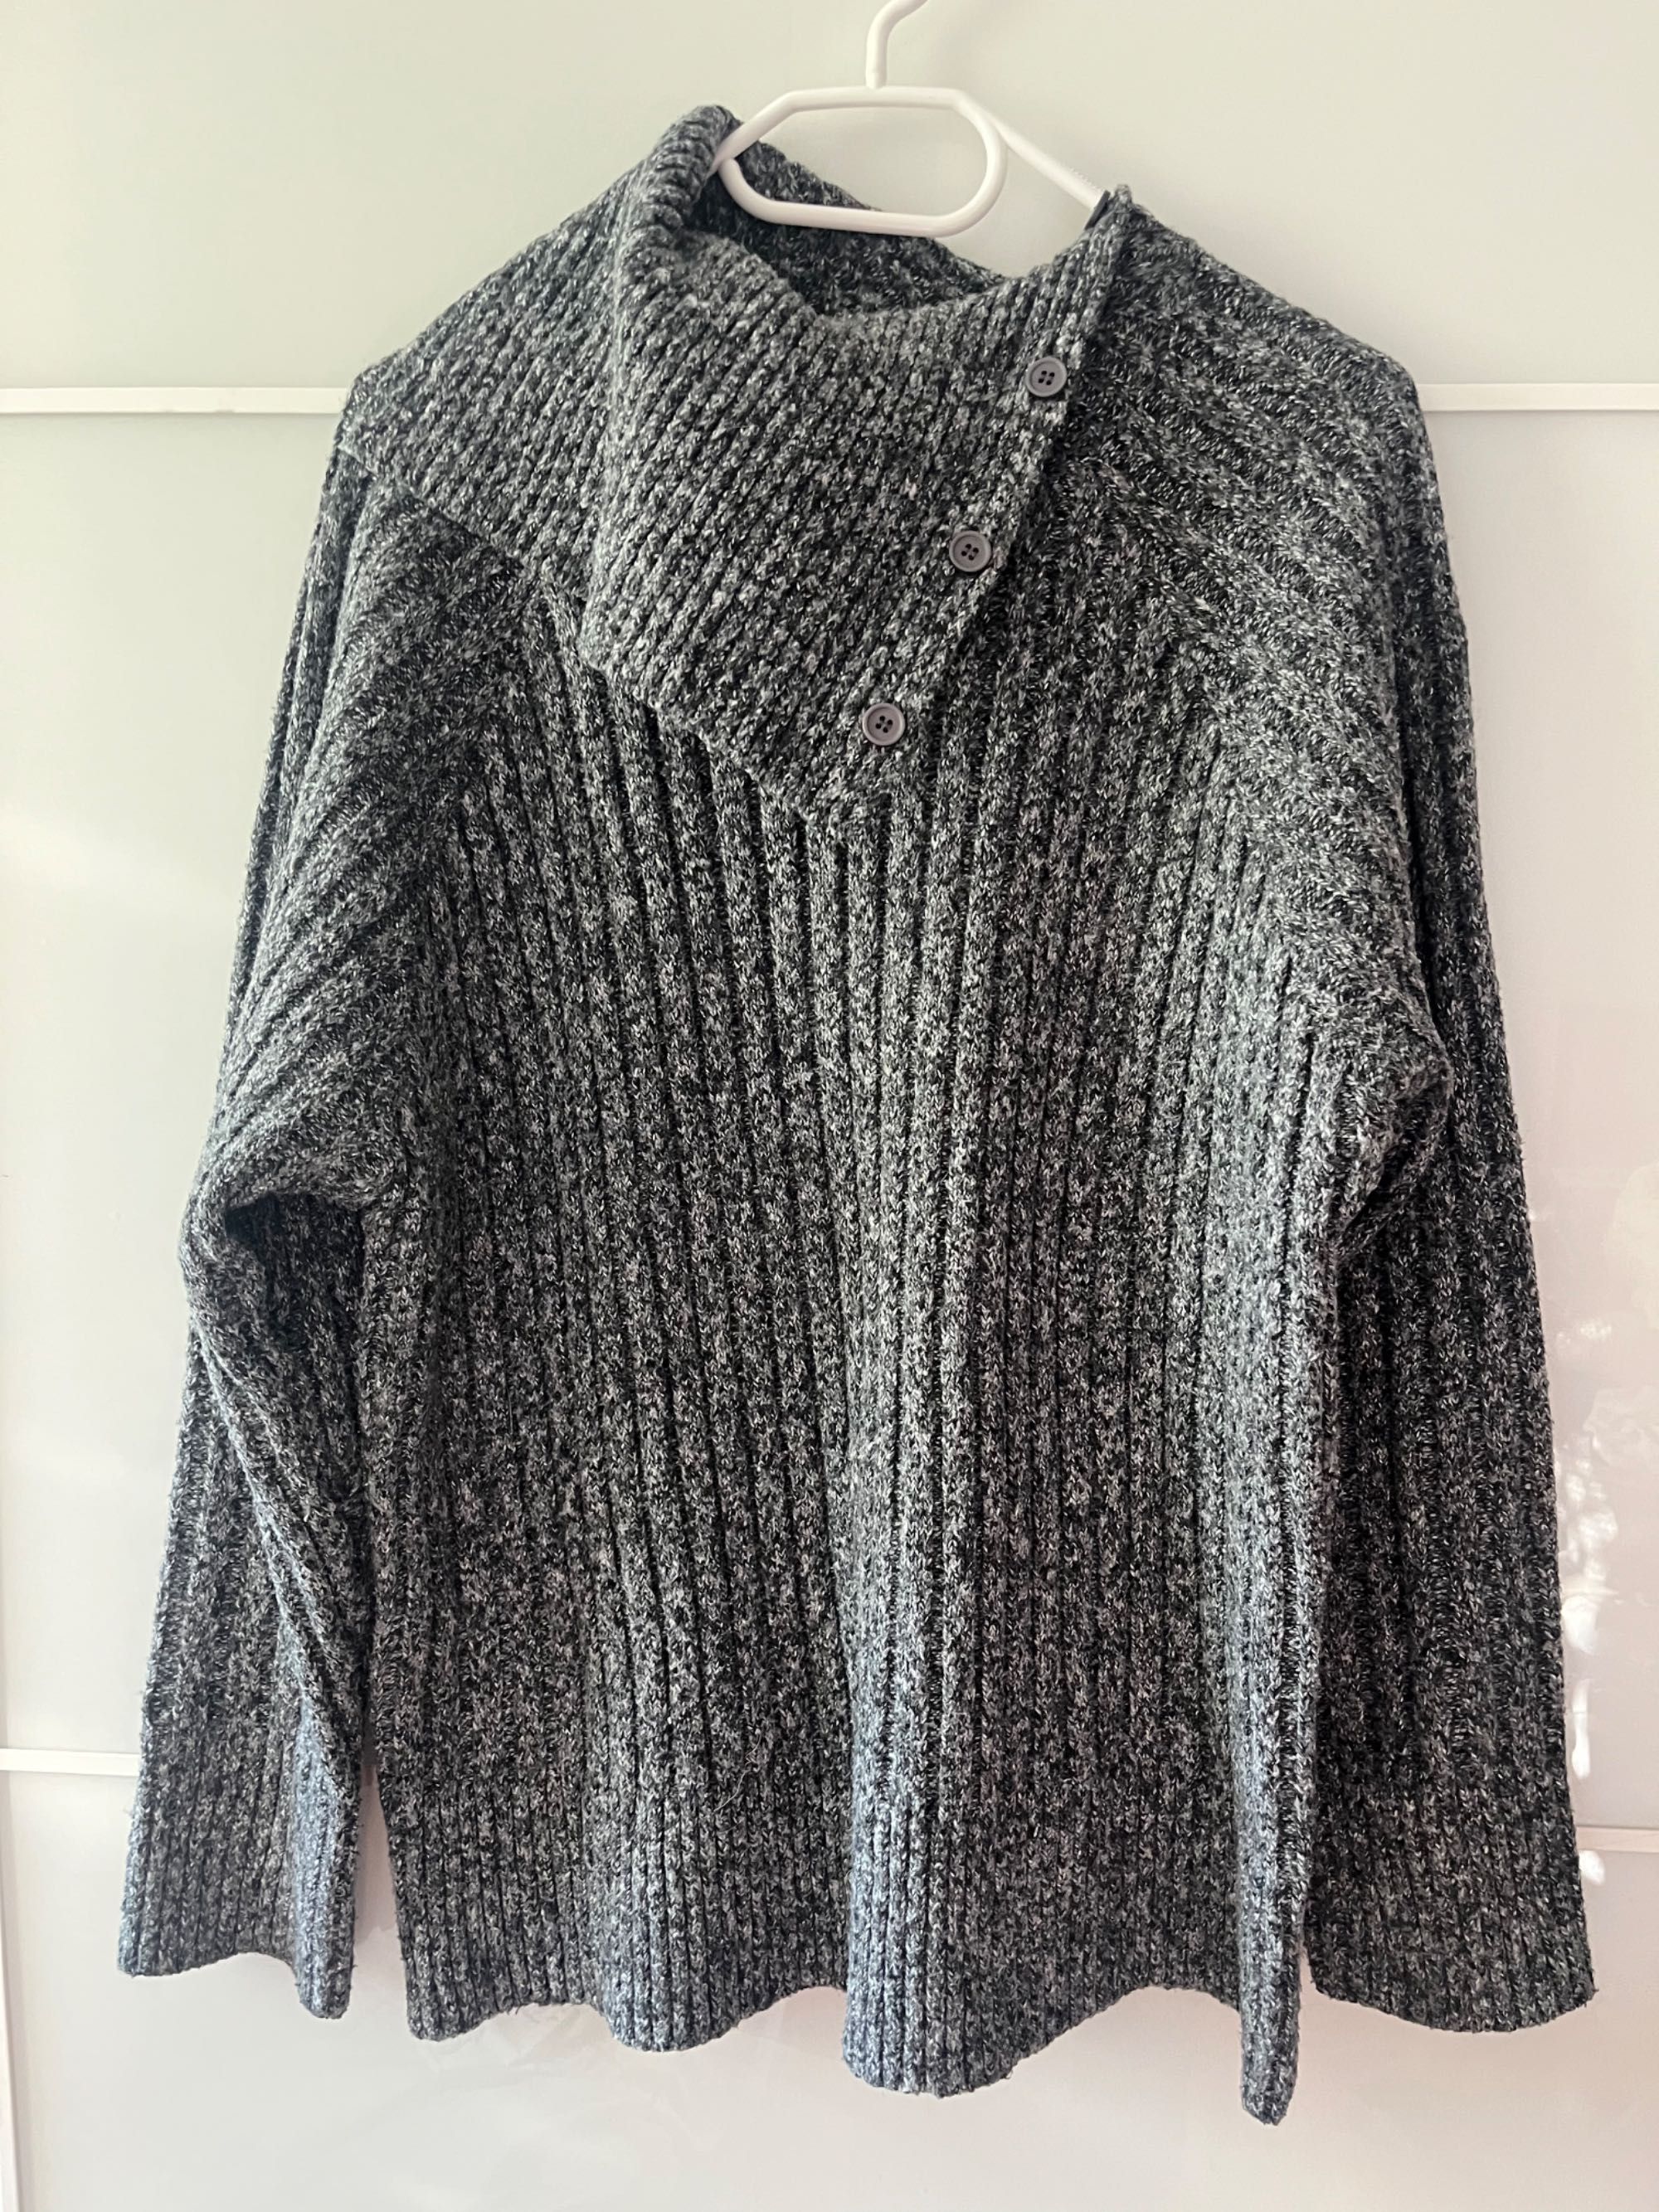 Sweter Zara, 38 40